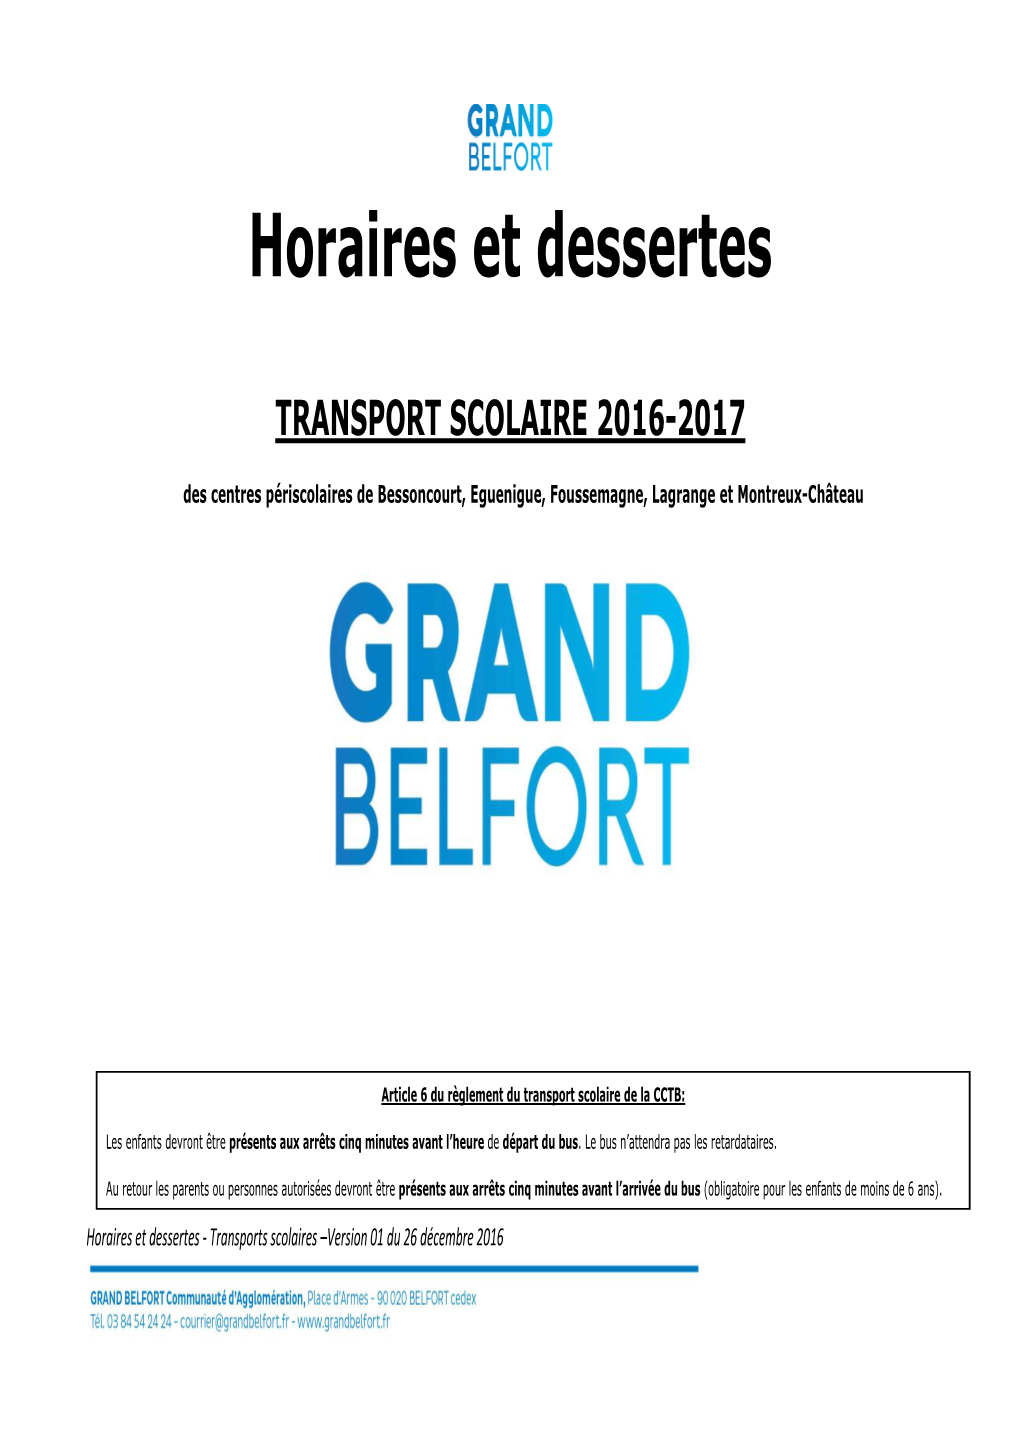 Horaires & Dessertestransports Scolaires-V1-26-12-16